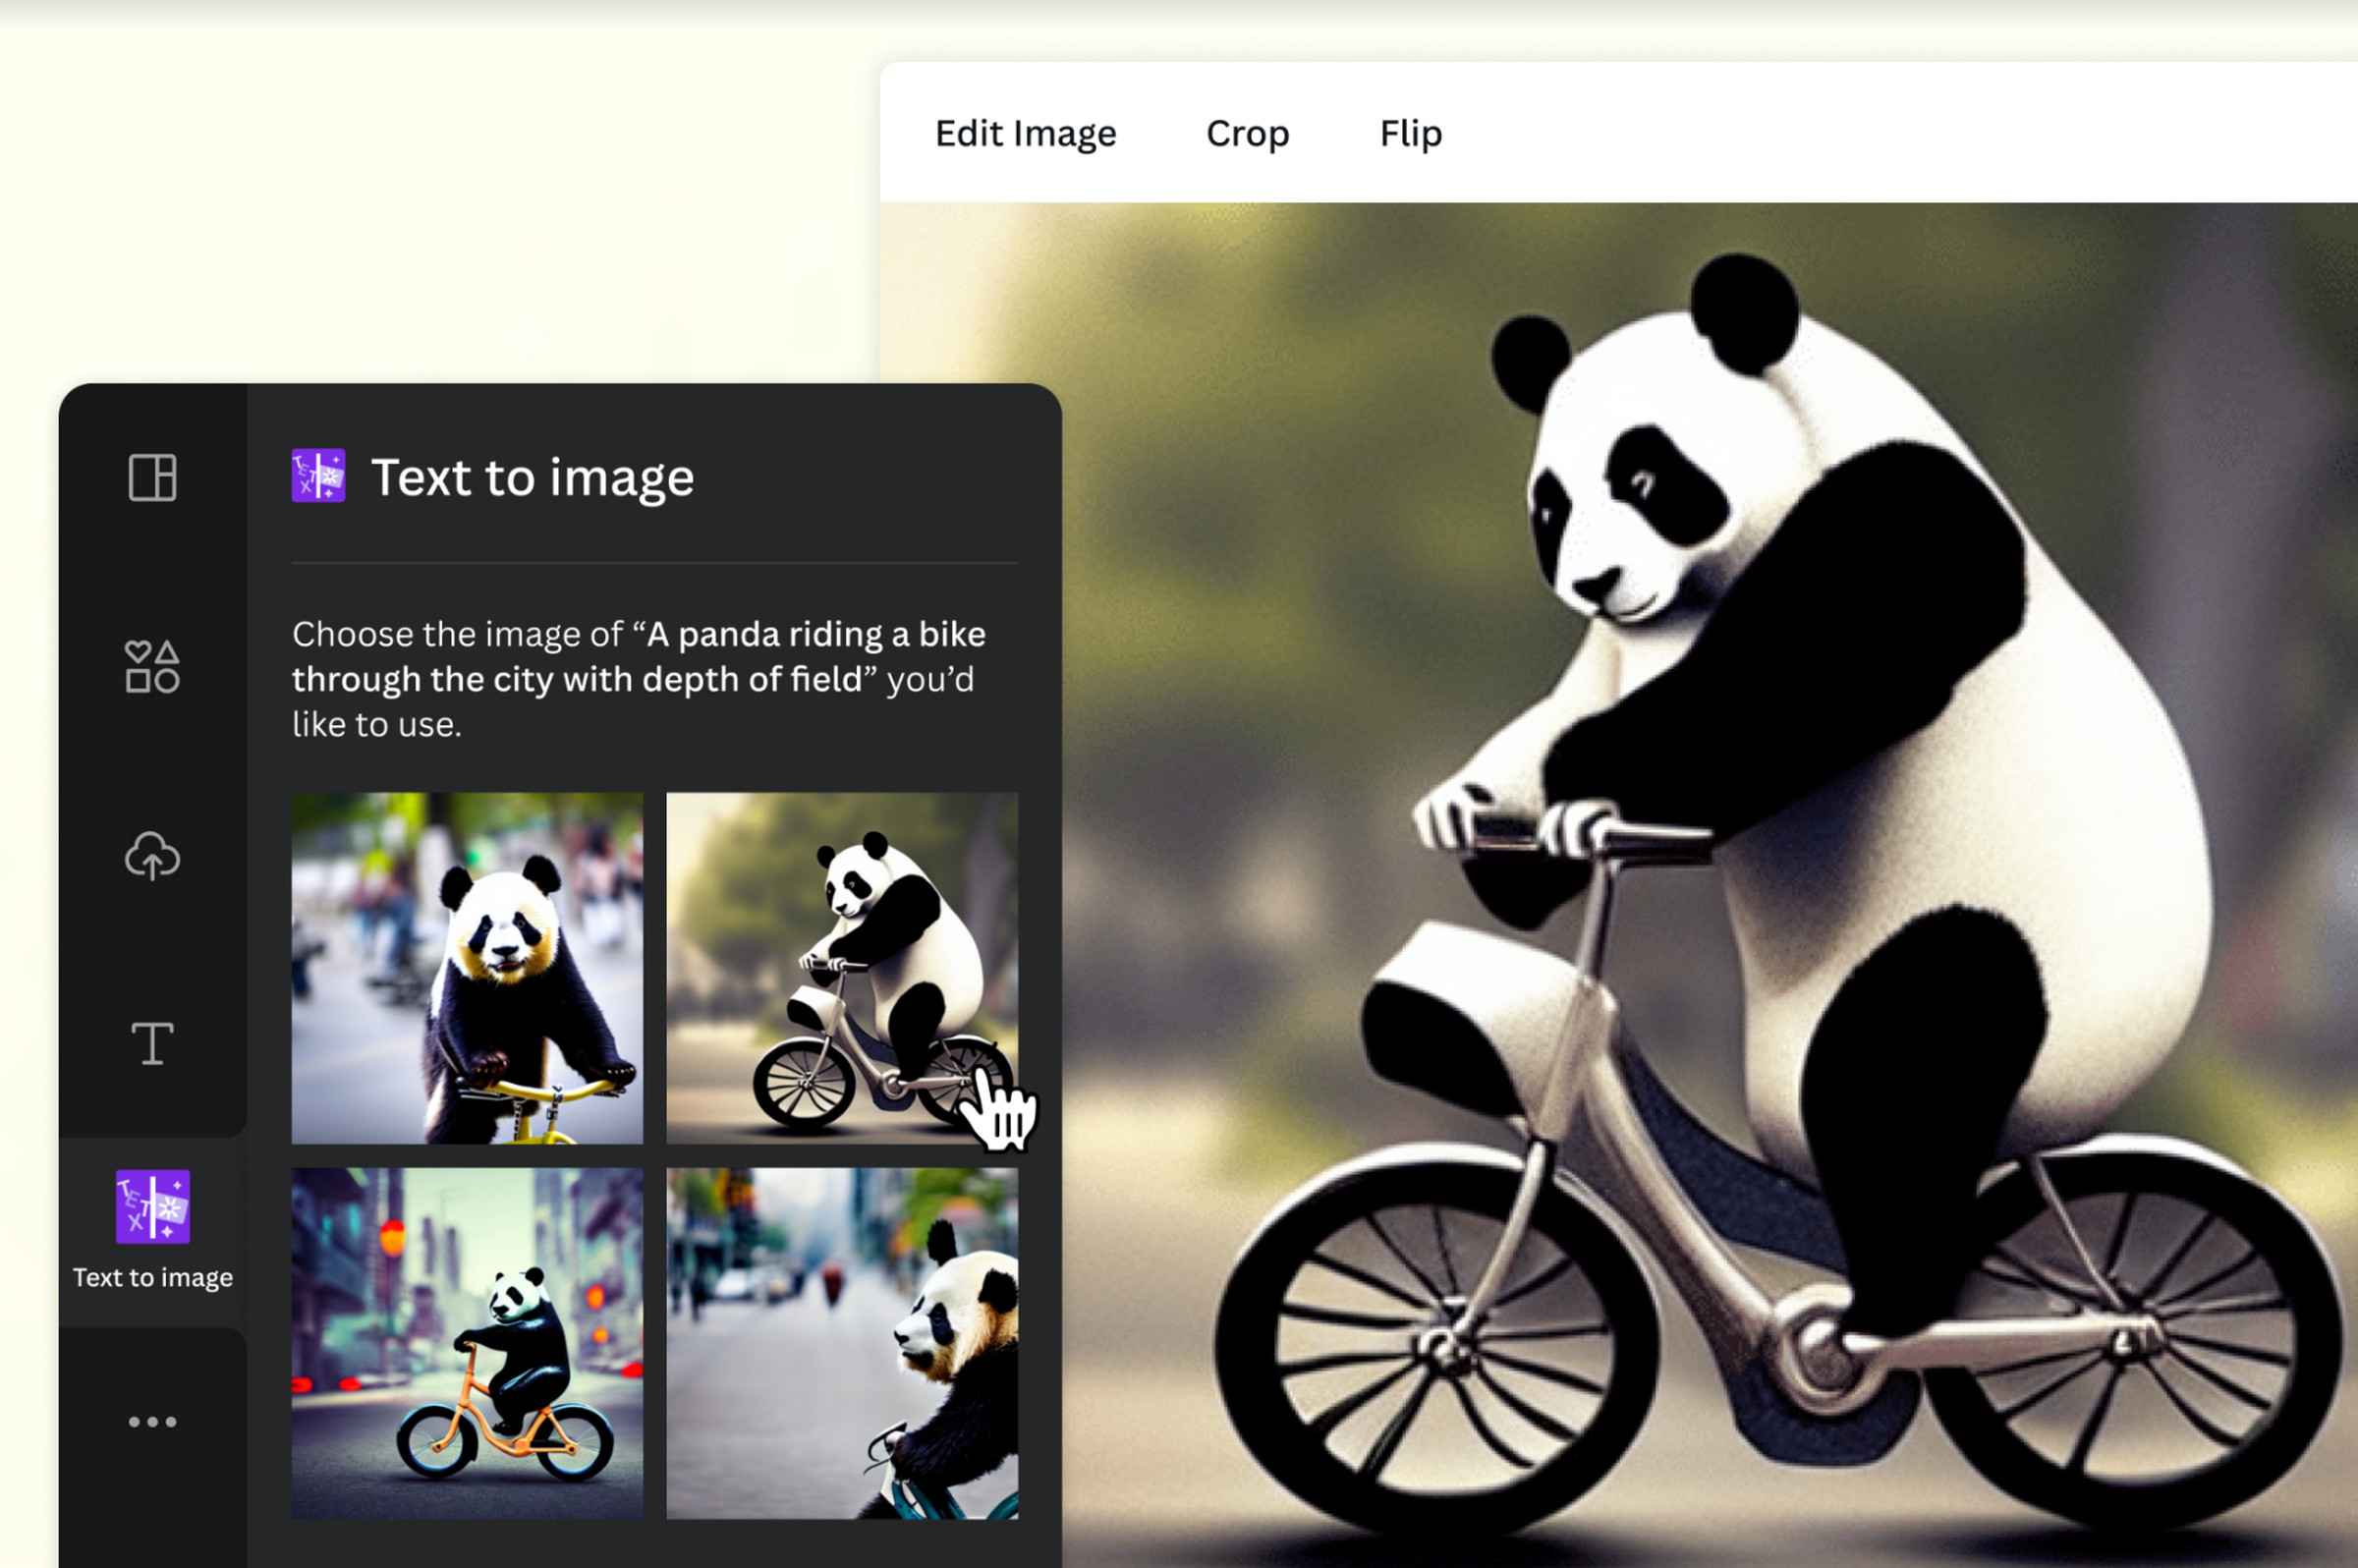 Bisiklete binen bir pandanın dört görüntüsünü oluşturan metinden görüntüye aracının resmi.